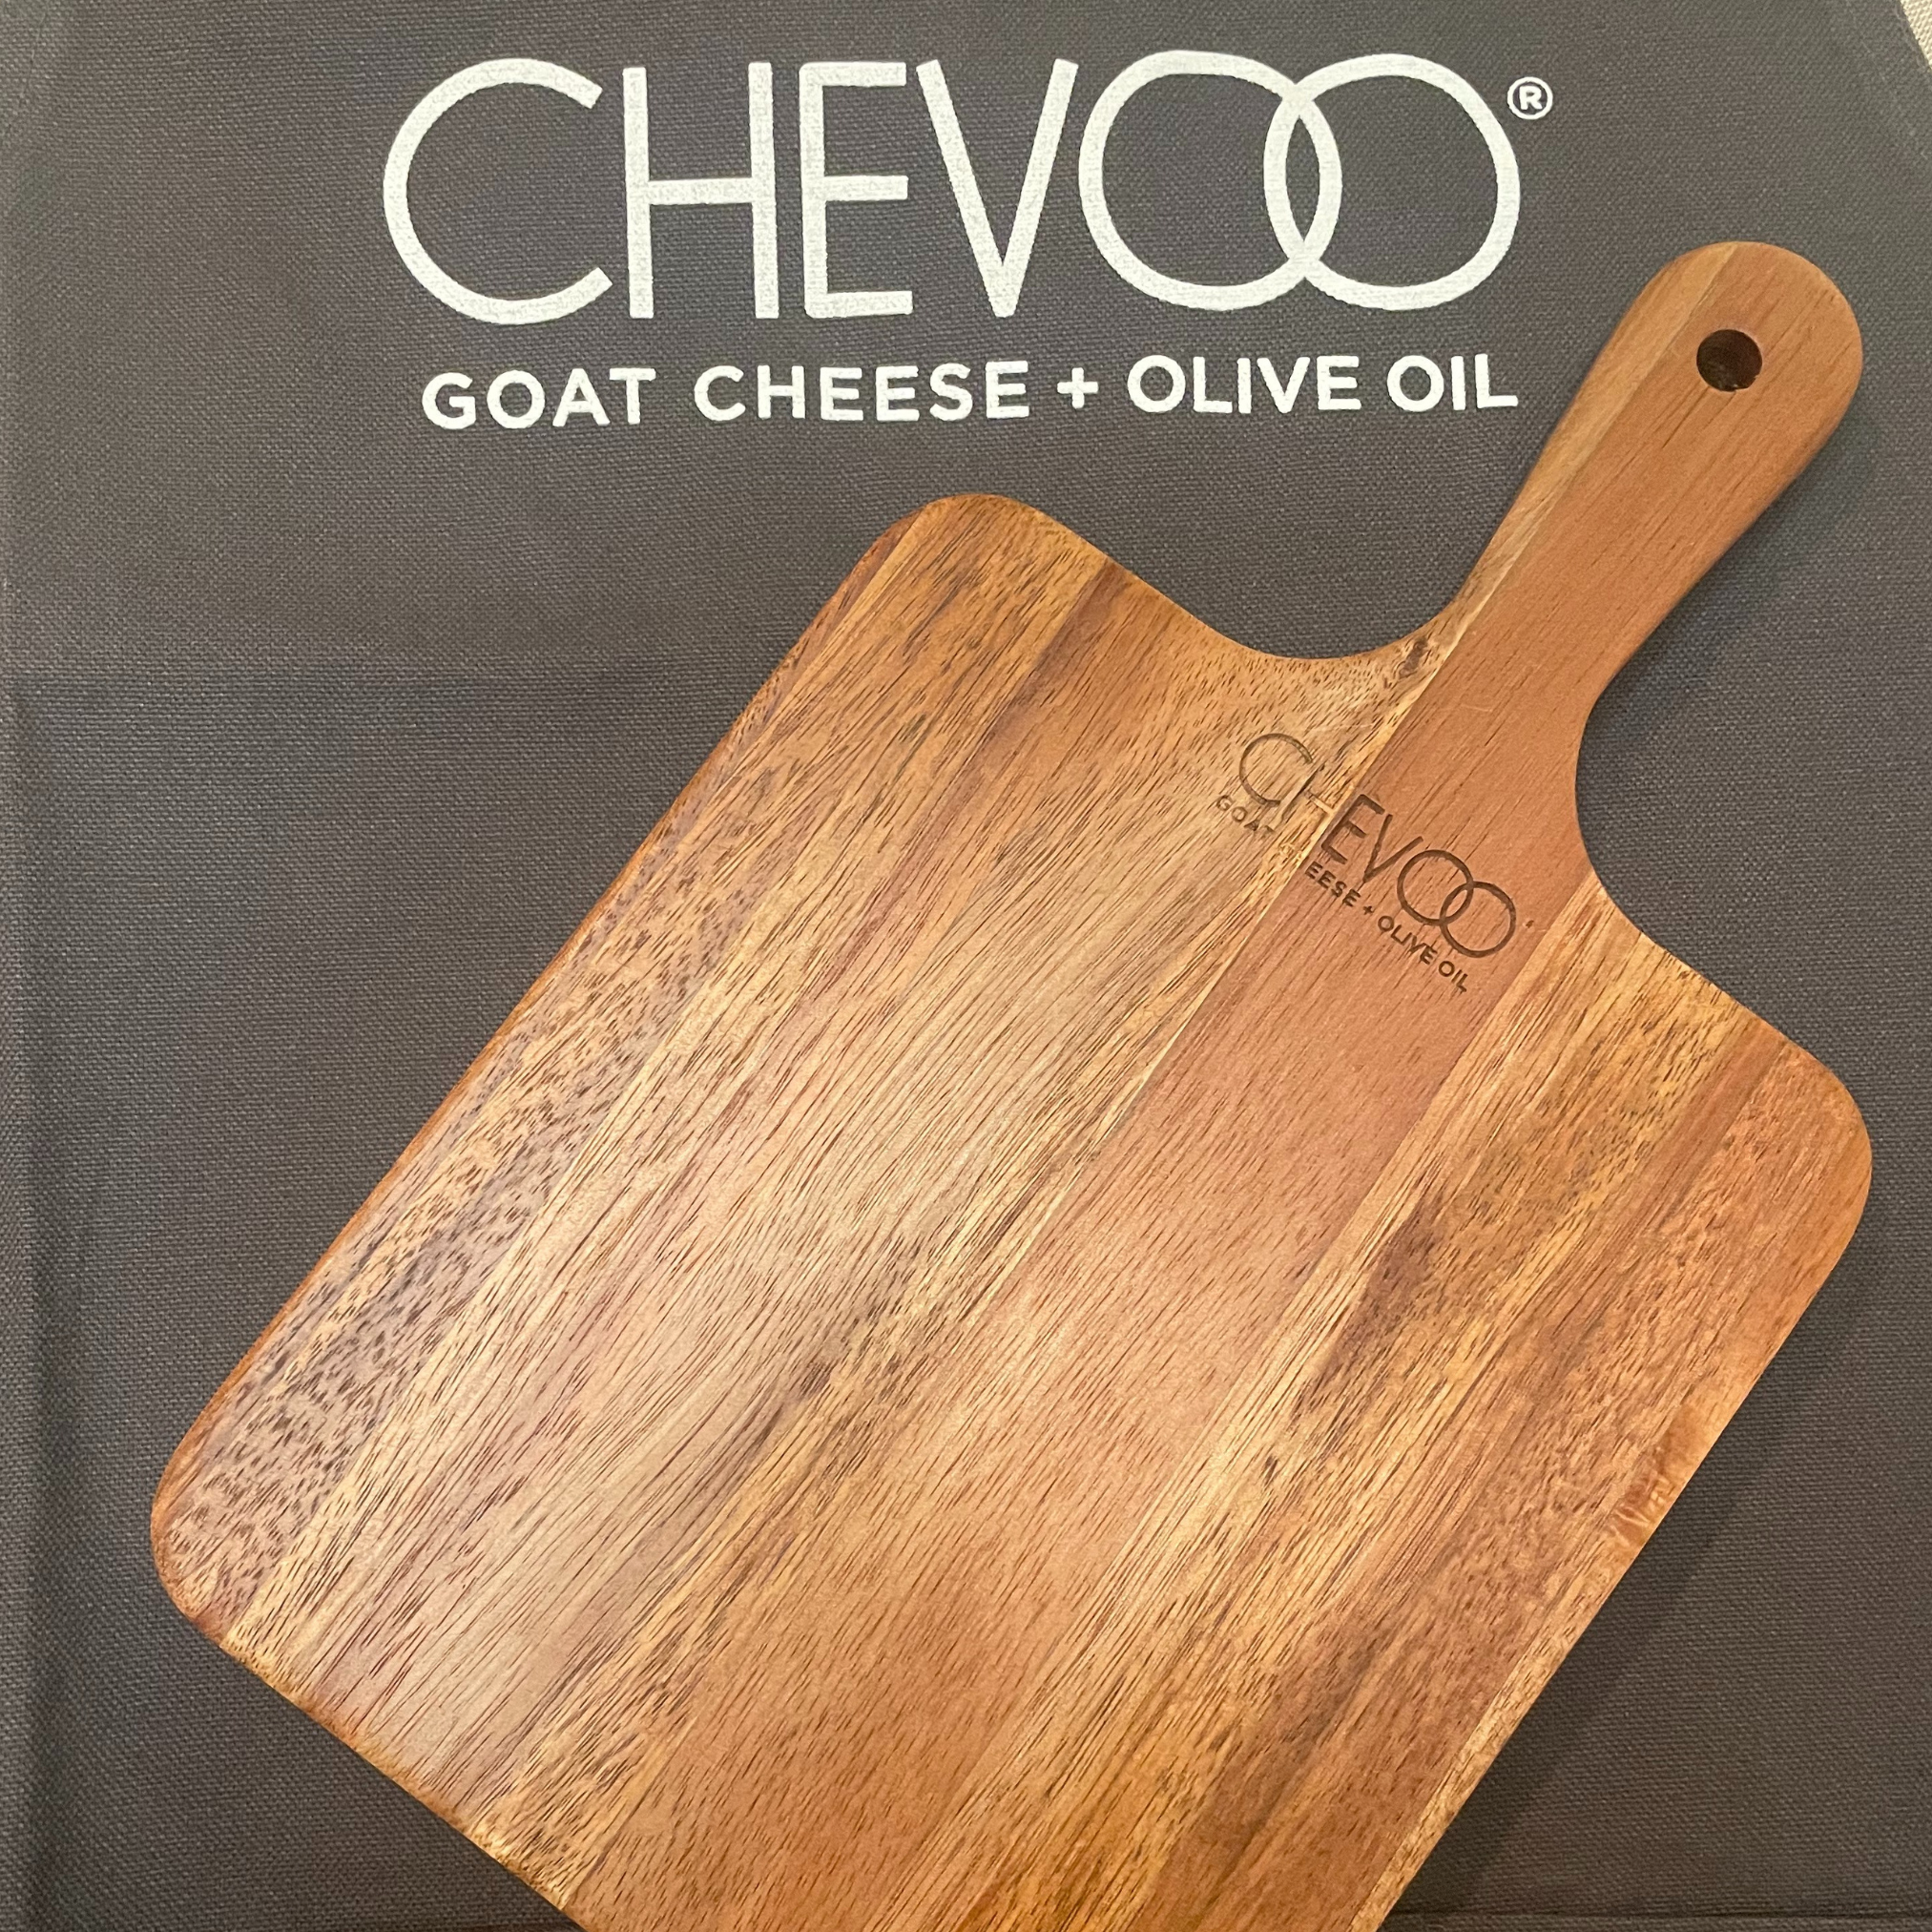 CHEVOO Small Cheese Board